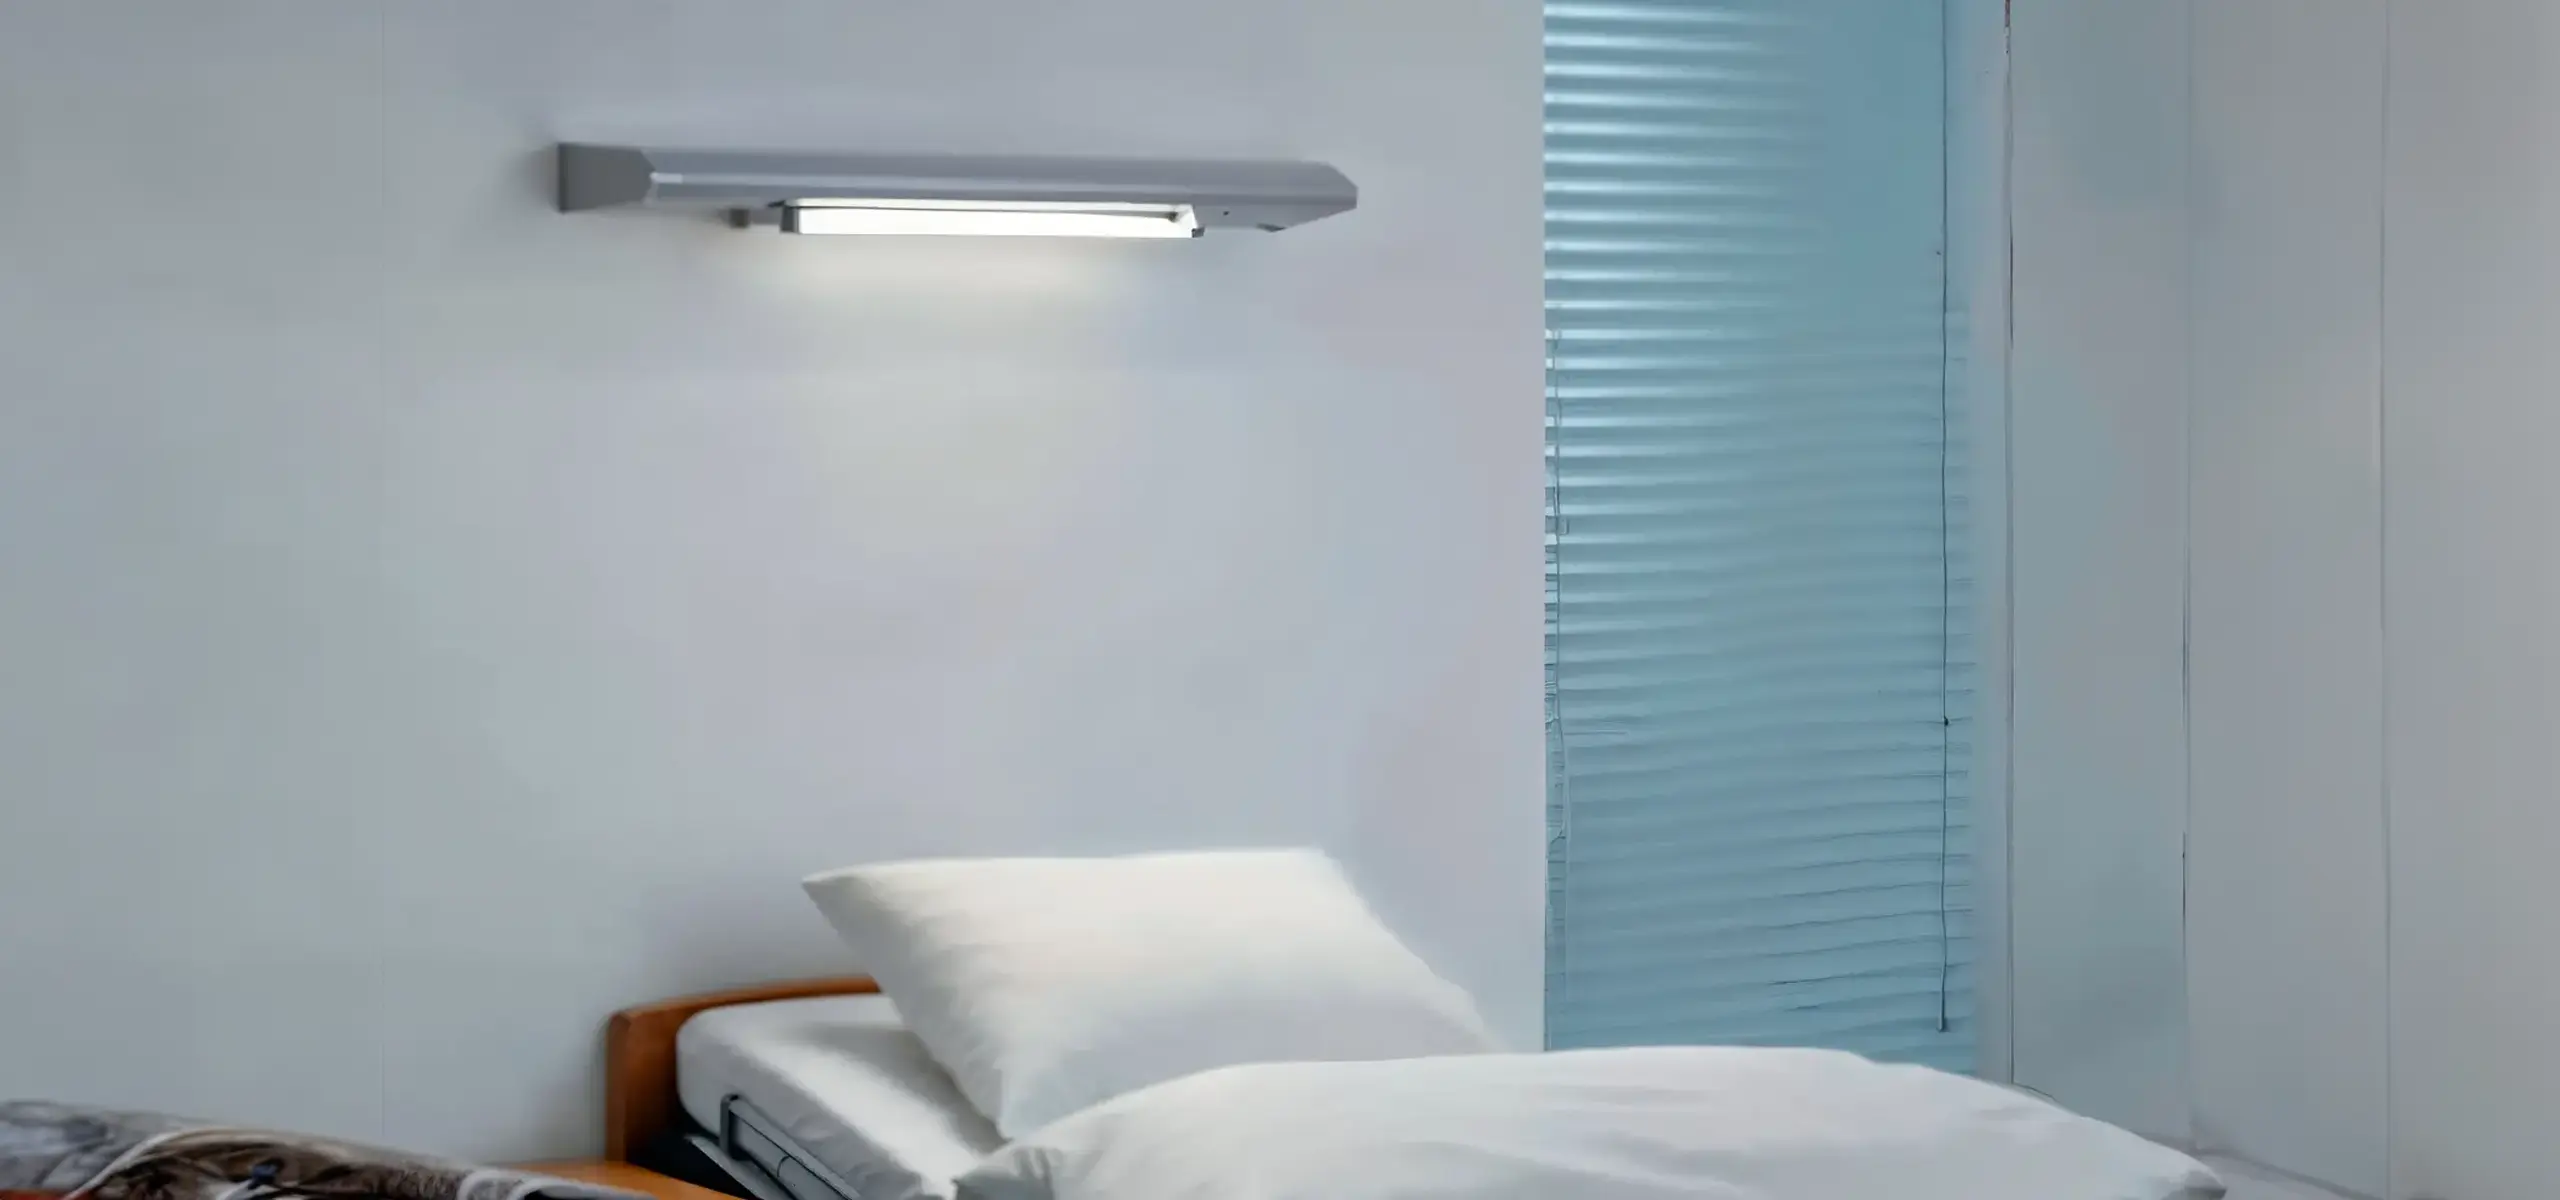 zumtobel hospital light design